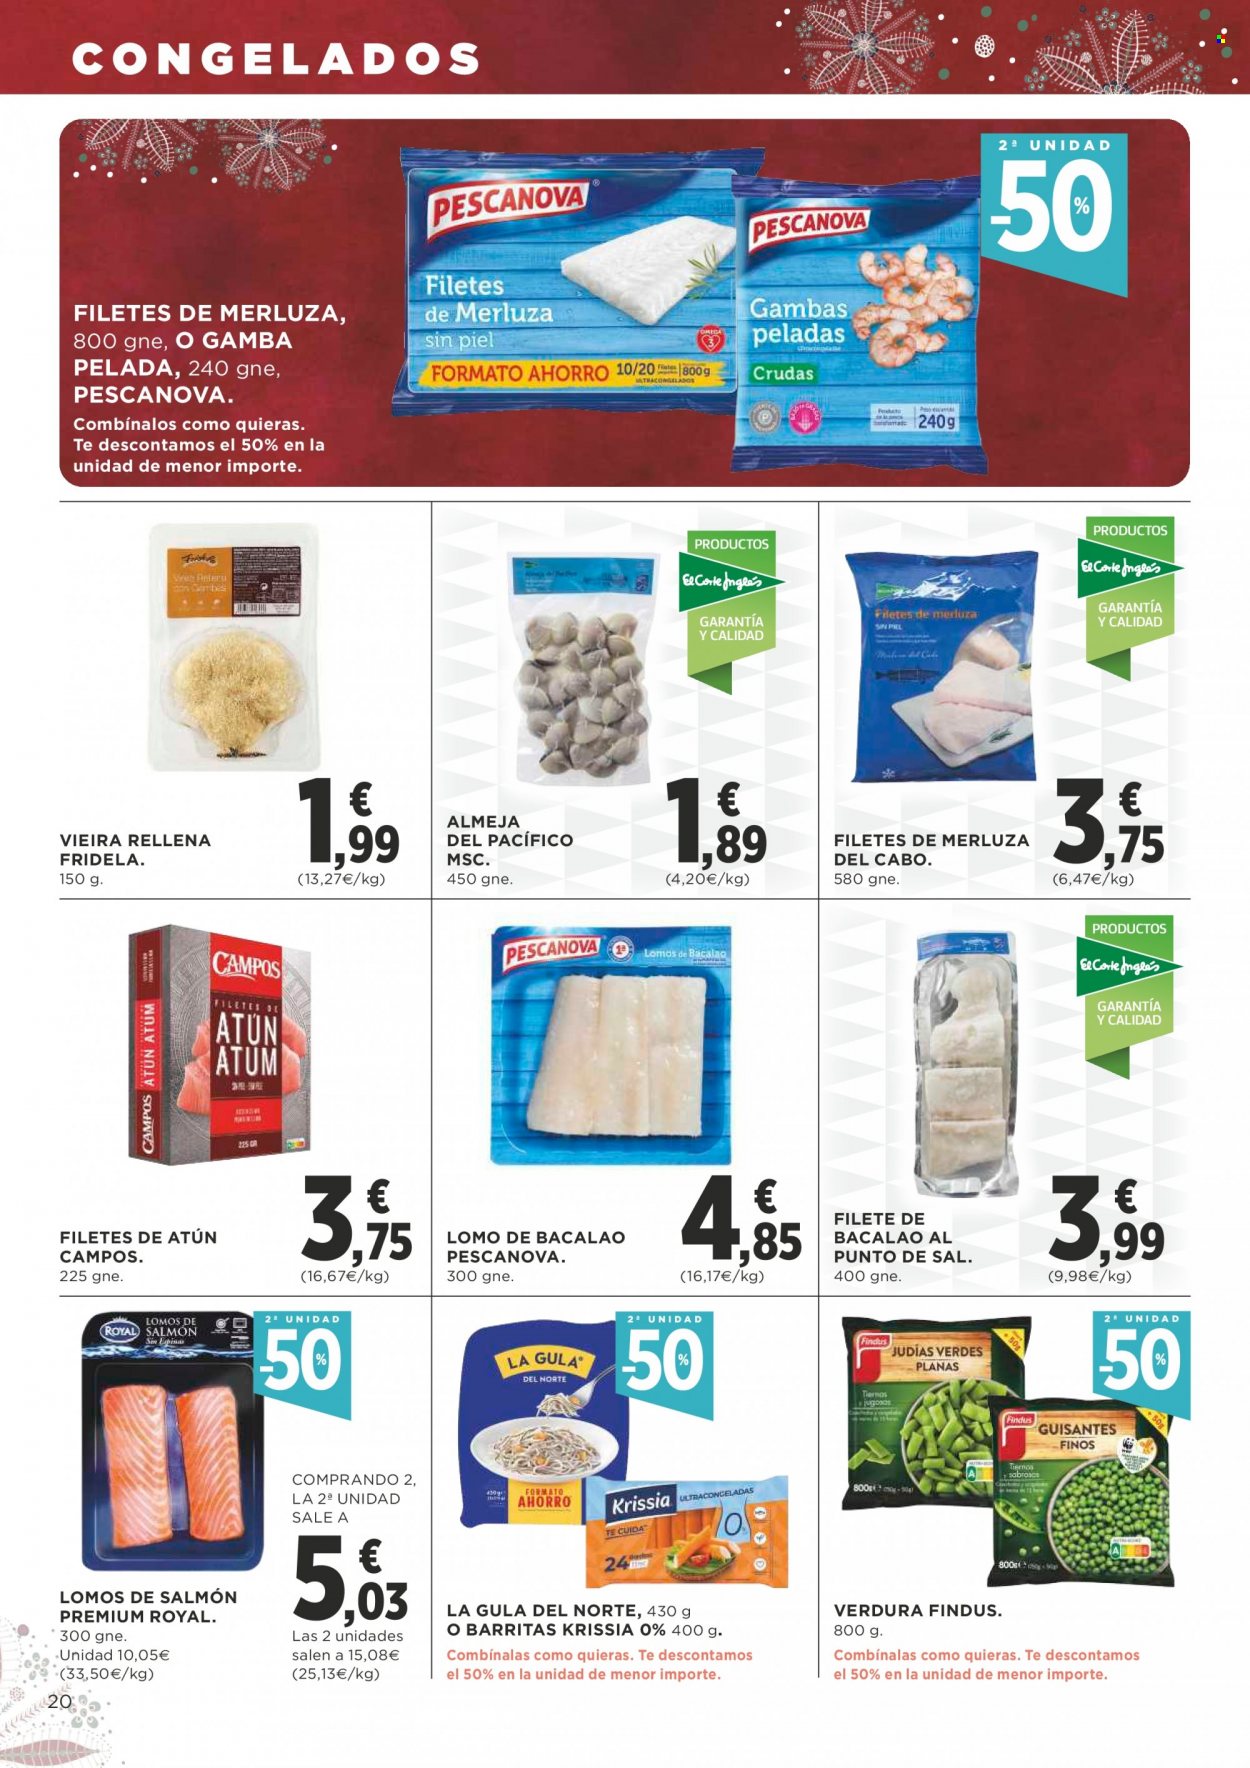 thumbnail - Folleto actual Supercor supermercados - 02/12/21 - 15/12/21 - Ventas - lomo, merluza, almeja, Findus, salmón, La Gula del Norte. Página 20.